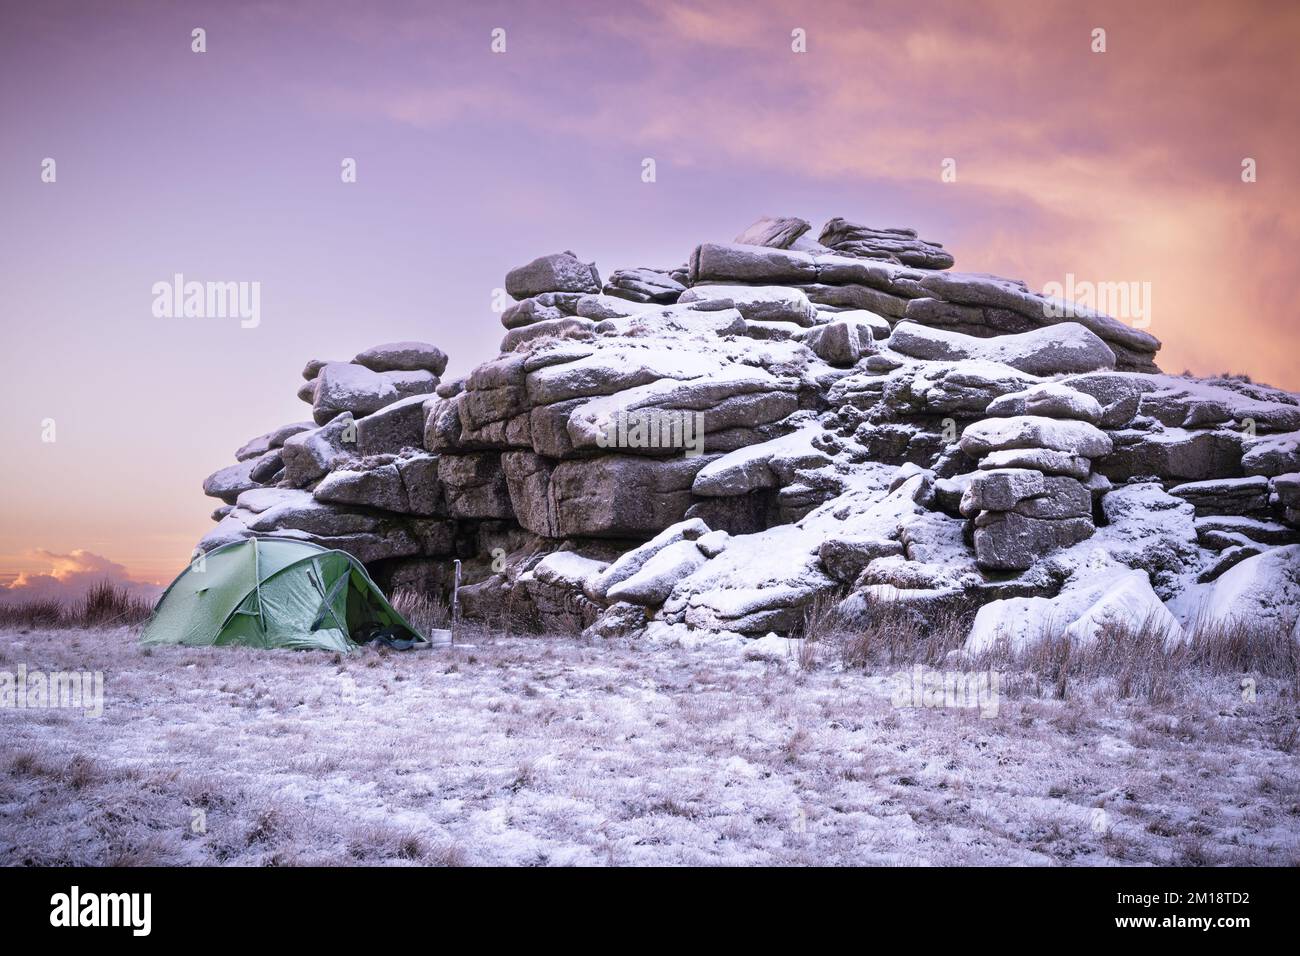 Merrivale, Dartmoor-Nationalpark, Devon, Großbritannien. 11.. Dezember 2022. UK Weather: Fire and Ice on Dartmoor. Das einsame Zelt eines tapferen „wilden Campers“, der am Fuße eines schneebedeckten Great Mis Tor ein Camp aufgebaut hat. Die Winterbedingungen werden sich diese Woche mit weiteren Schneeprognosen fortsetzen. Kredit: Celia McMahon/Alamy Live News Stockfoto